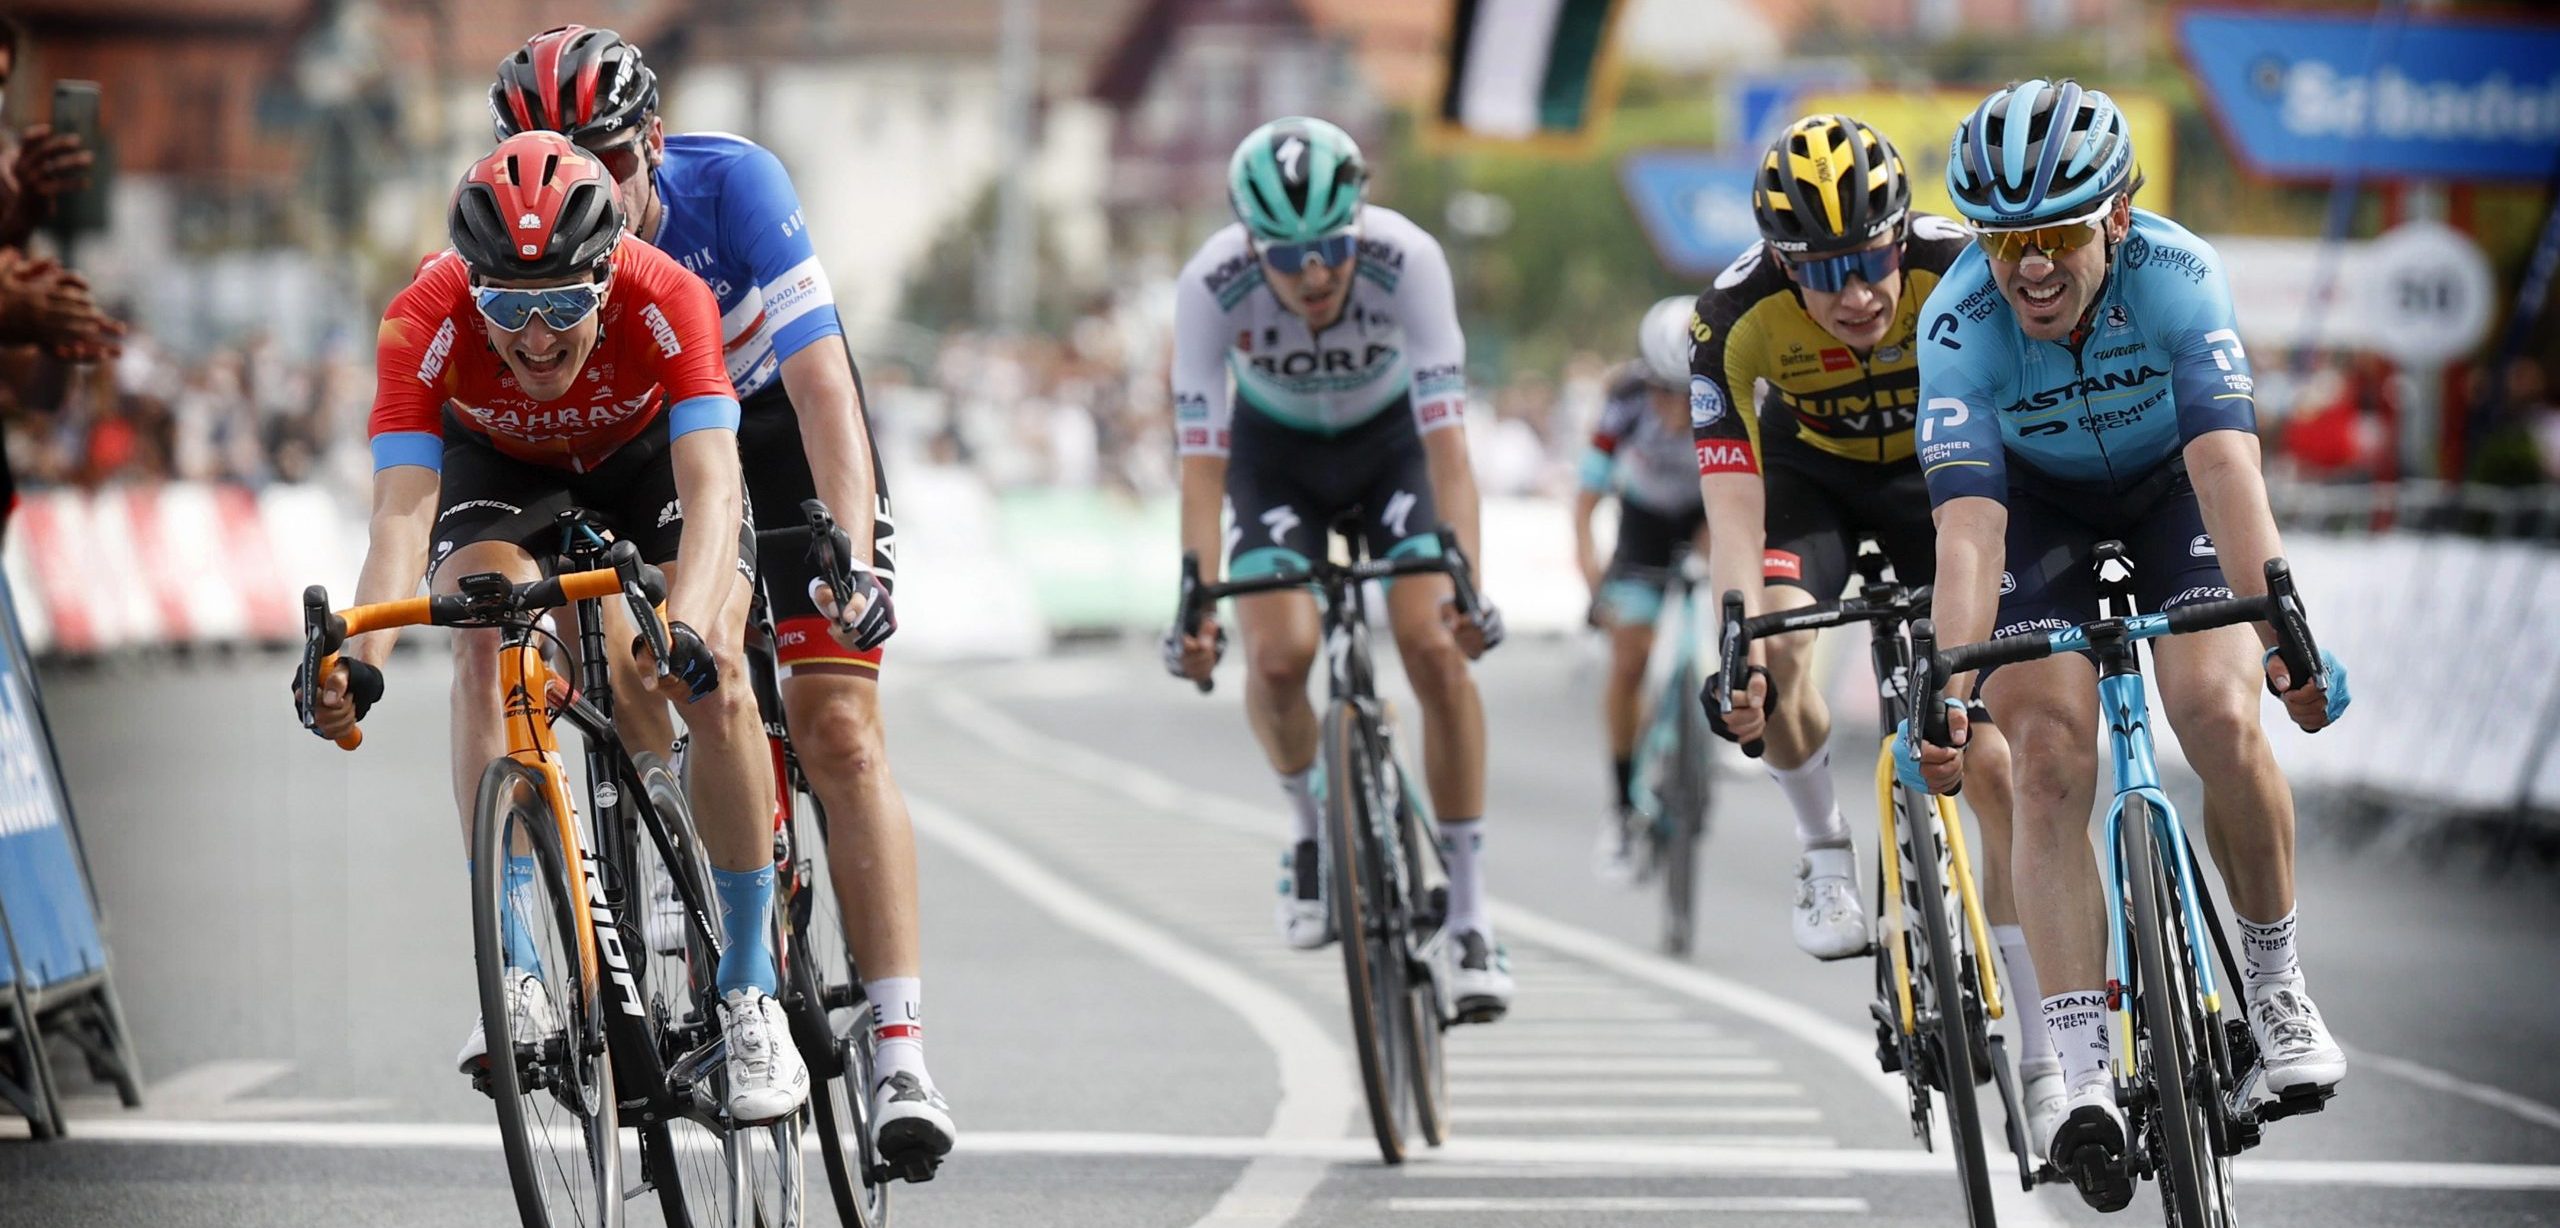 Ion Izagirre chasing the podium at the Tour de Romandie